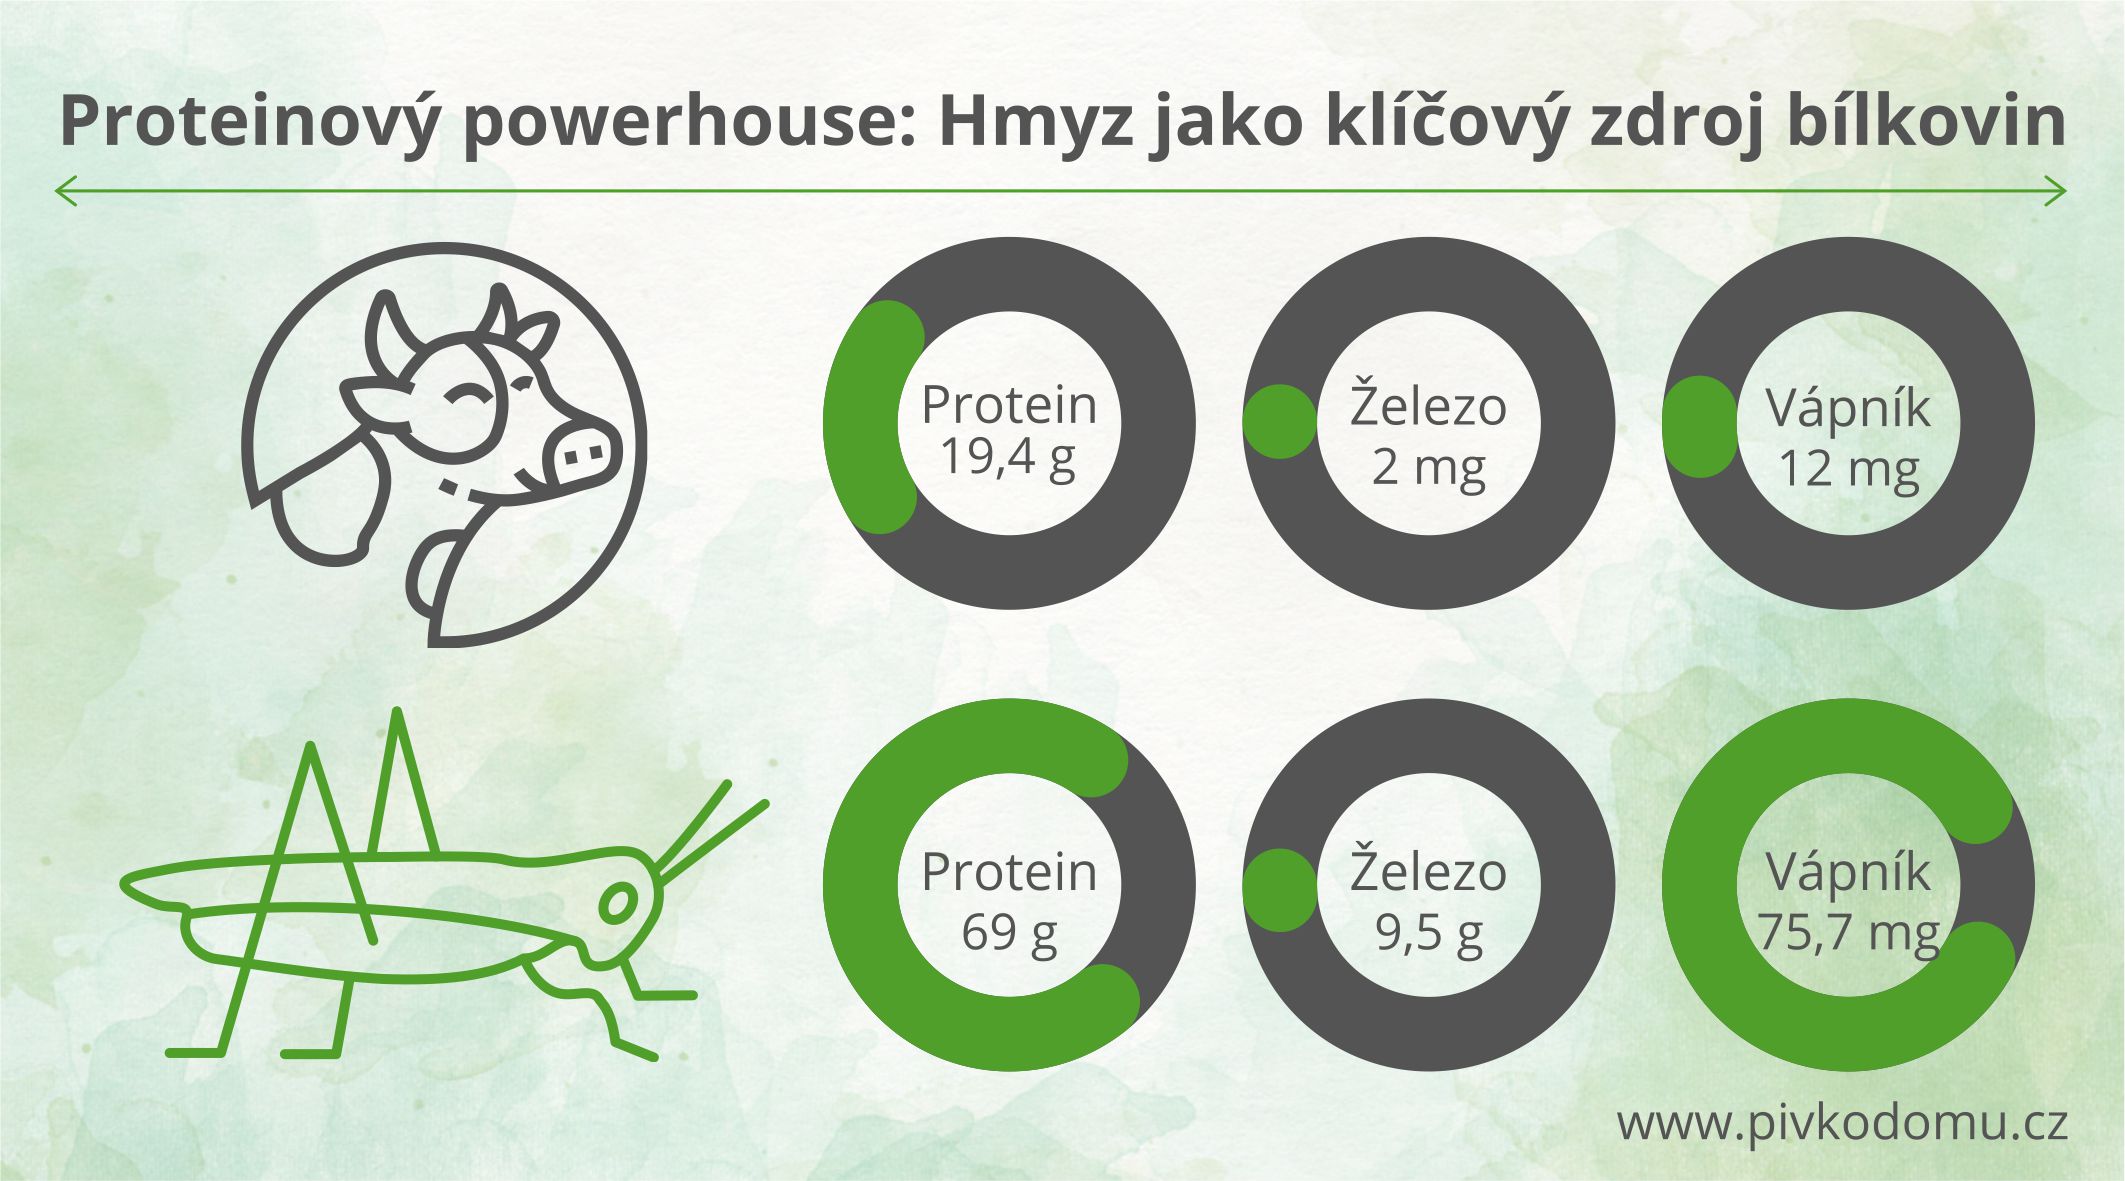 Proteinový powerhouse: hmyz jako klíčový zdroj bílkovin